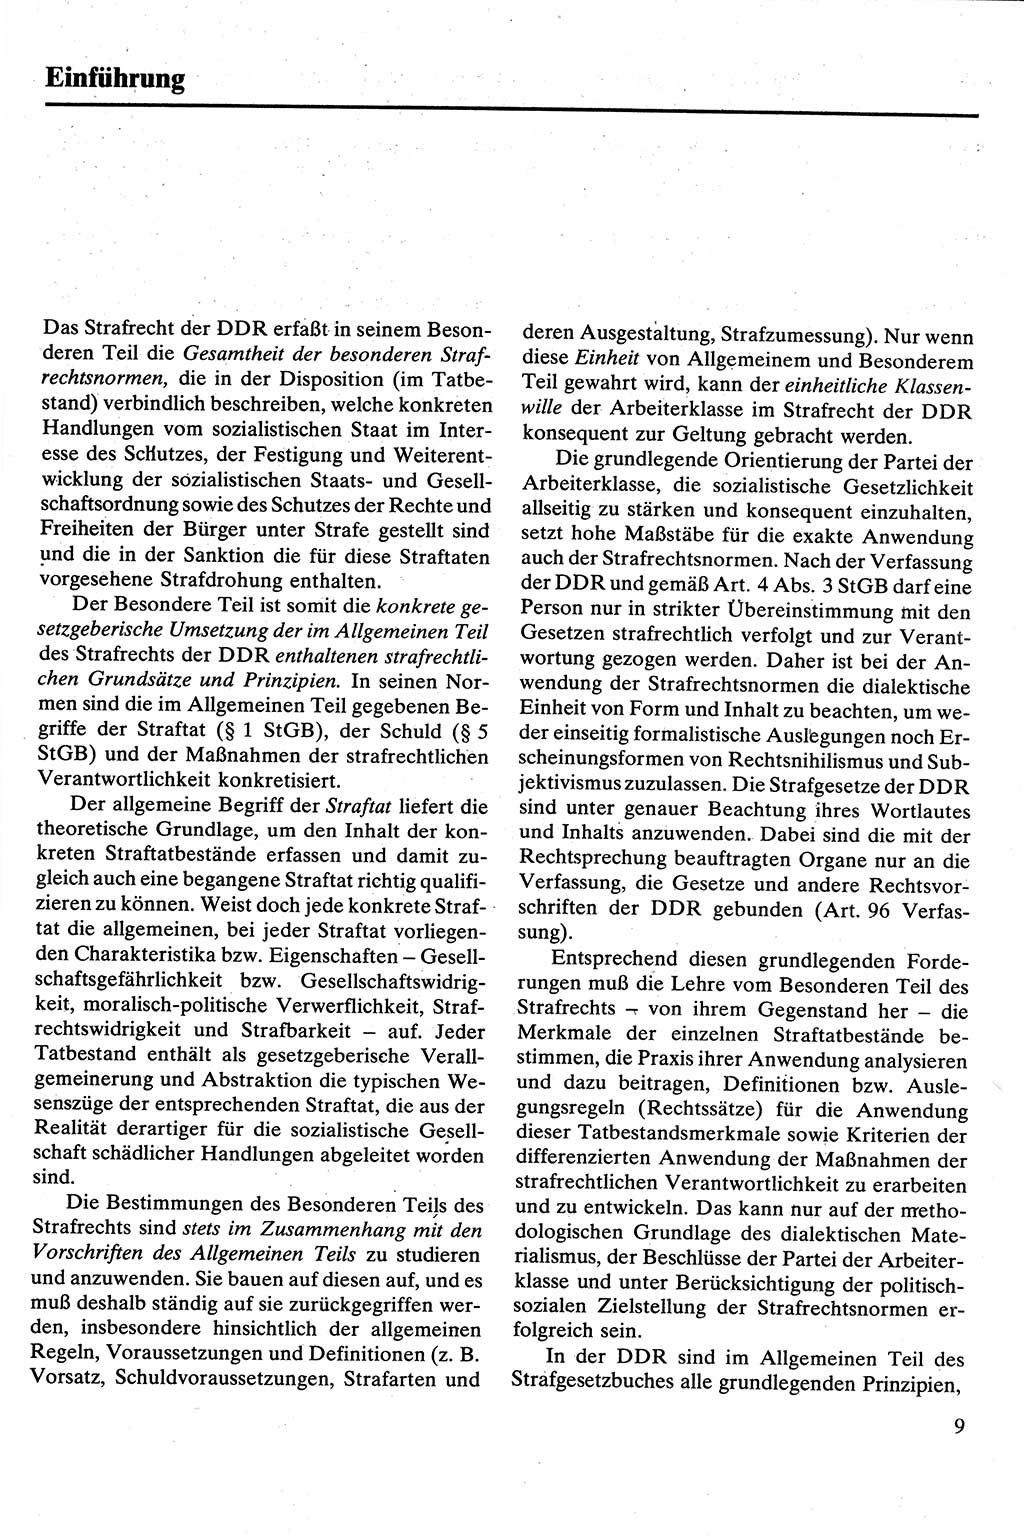 Strafrecht [Deutsche Demokratische Republik (DDR)], Besonderer Teil, Lehrbuch 1981, Seite 9 (Strafr. DDR BT Lb. 1981, S. 9)